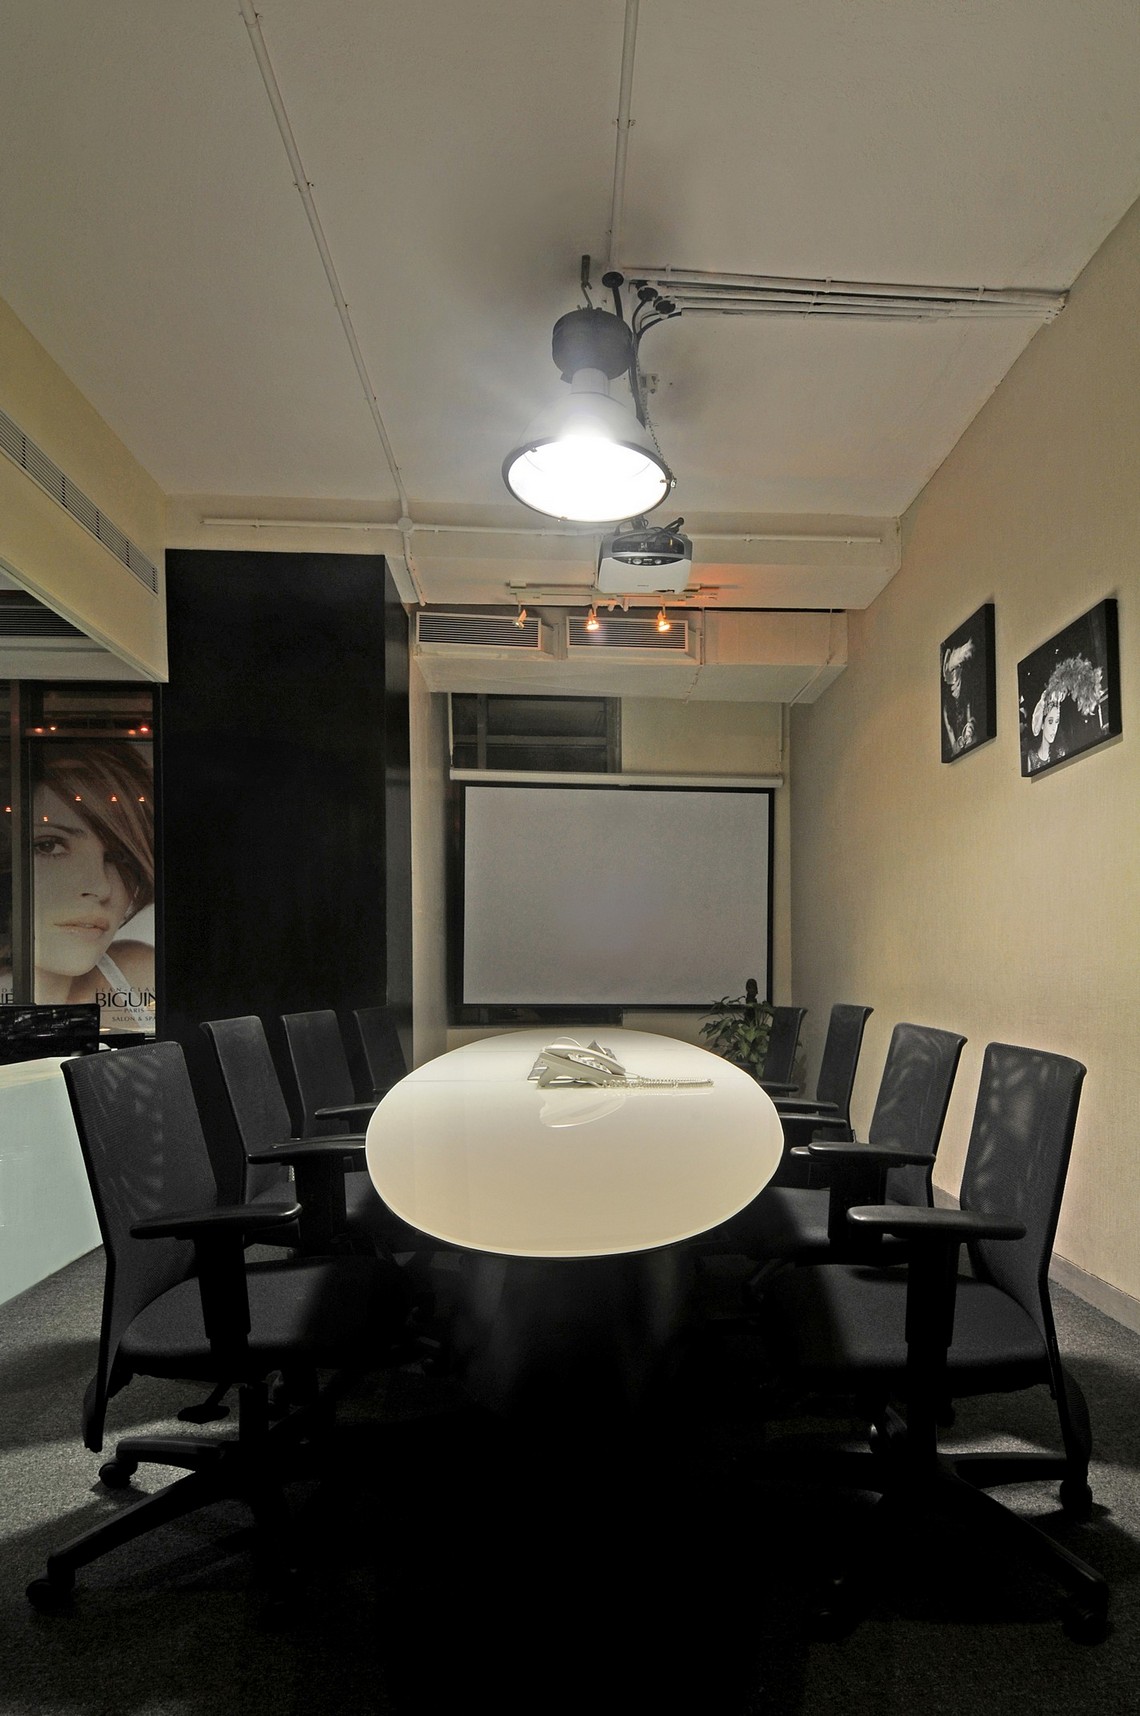 Biguine Office Interiors